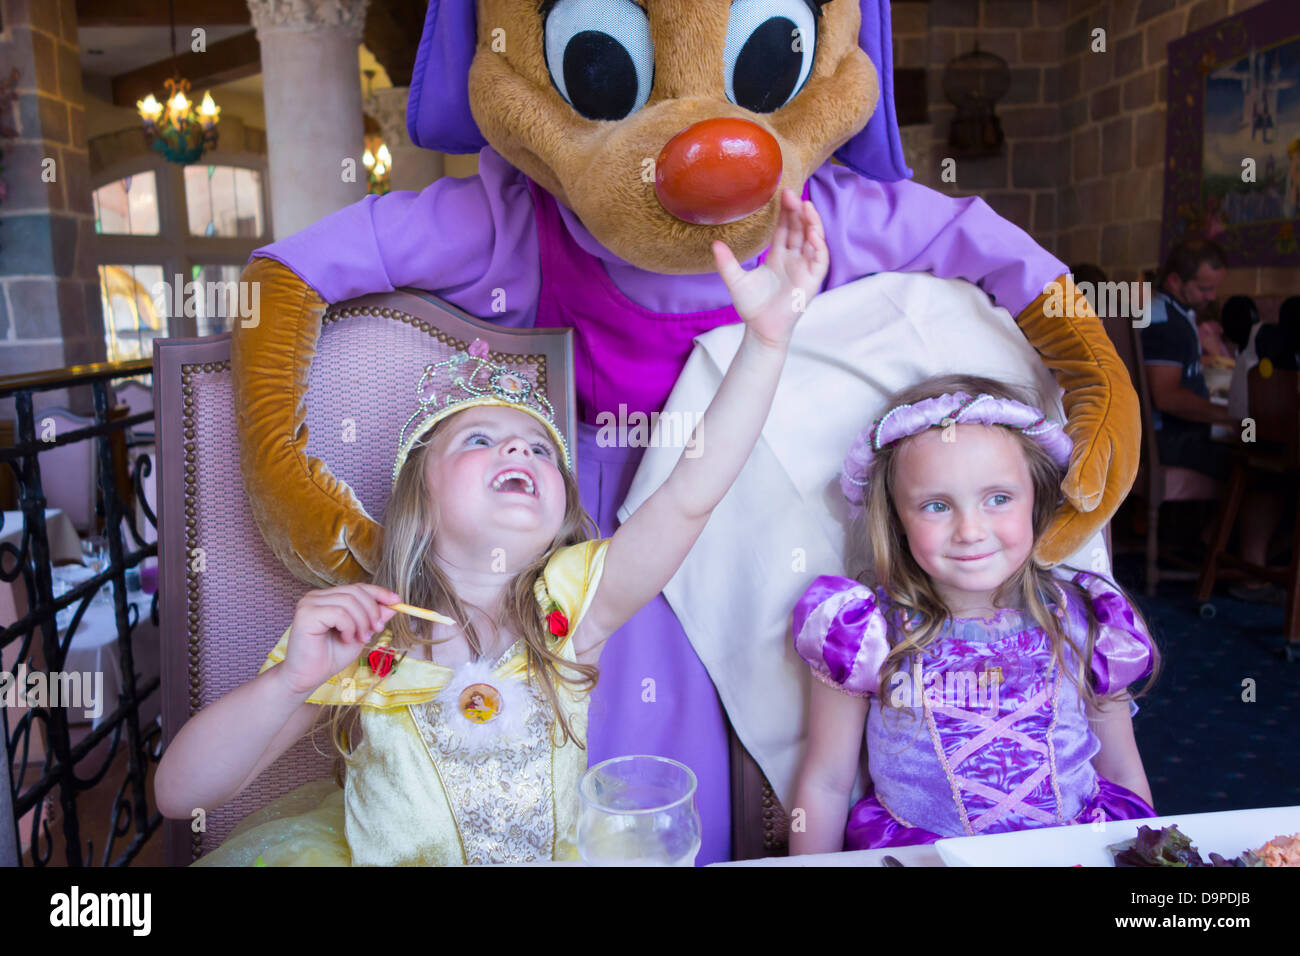 Sœurs âgées de 3 et 4 ans, rencontrez 675de l'Auberge de Cendrillon, Disneyland Paris. Banque D'Images